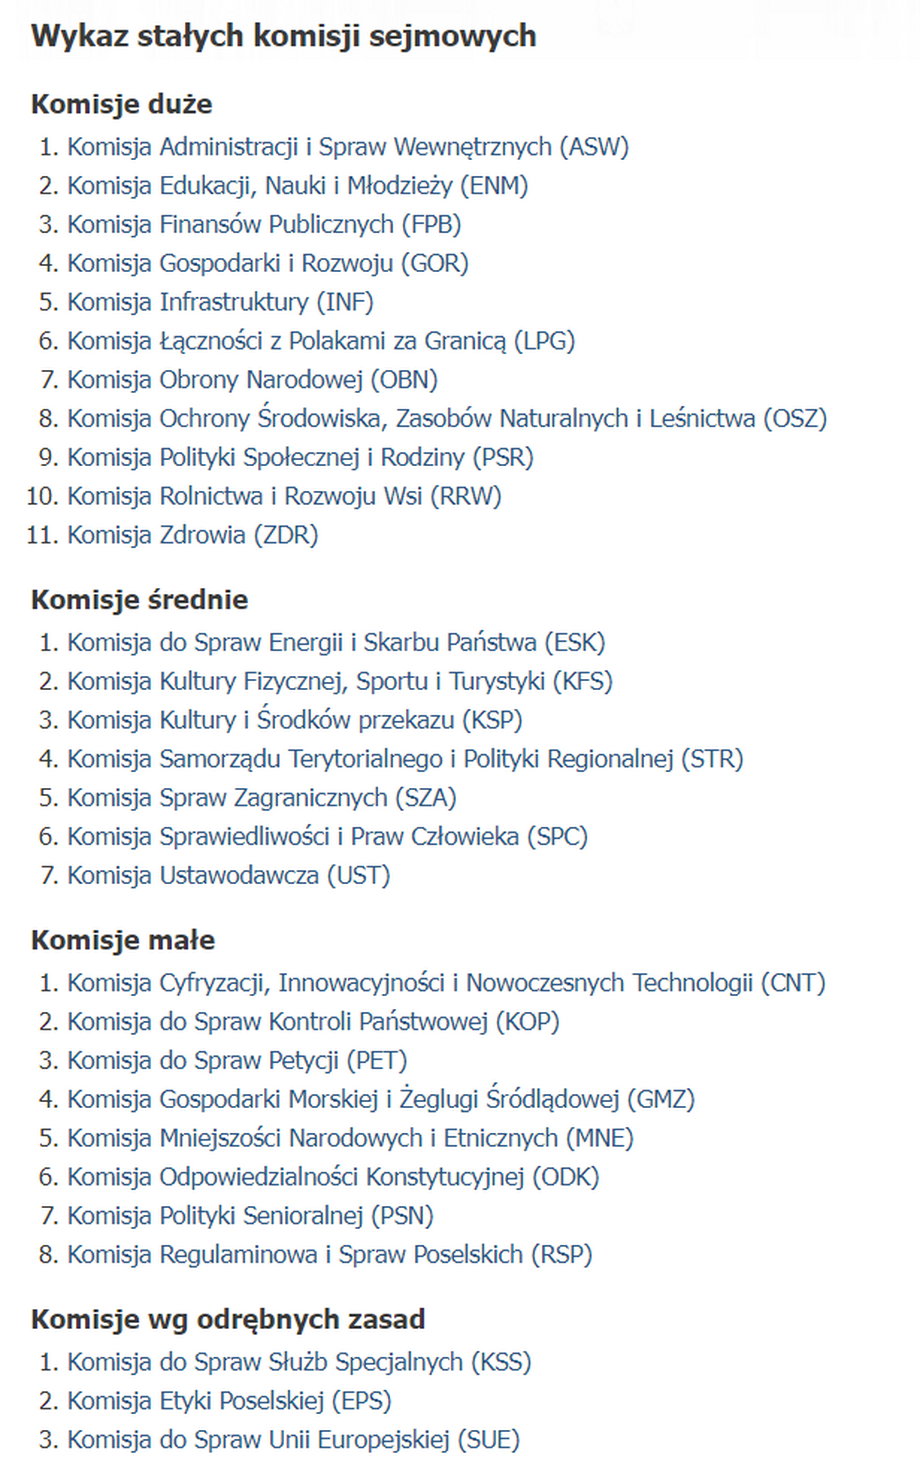 Wykaz dużych, średnich i małych komisji w Sejmie IX kadencji